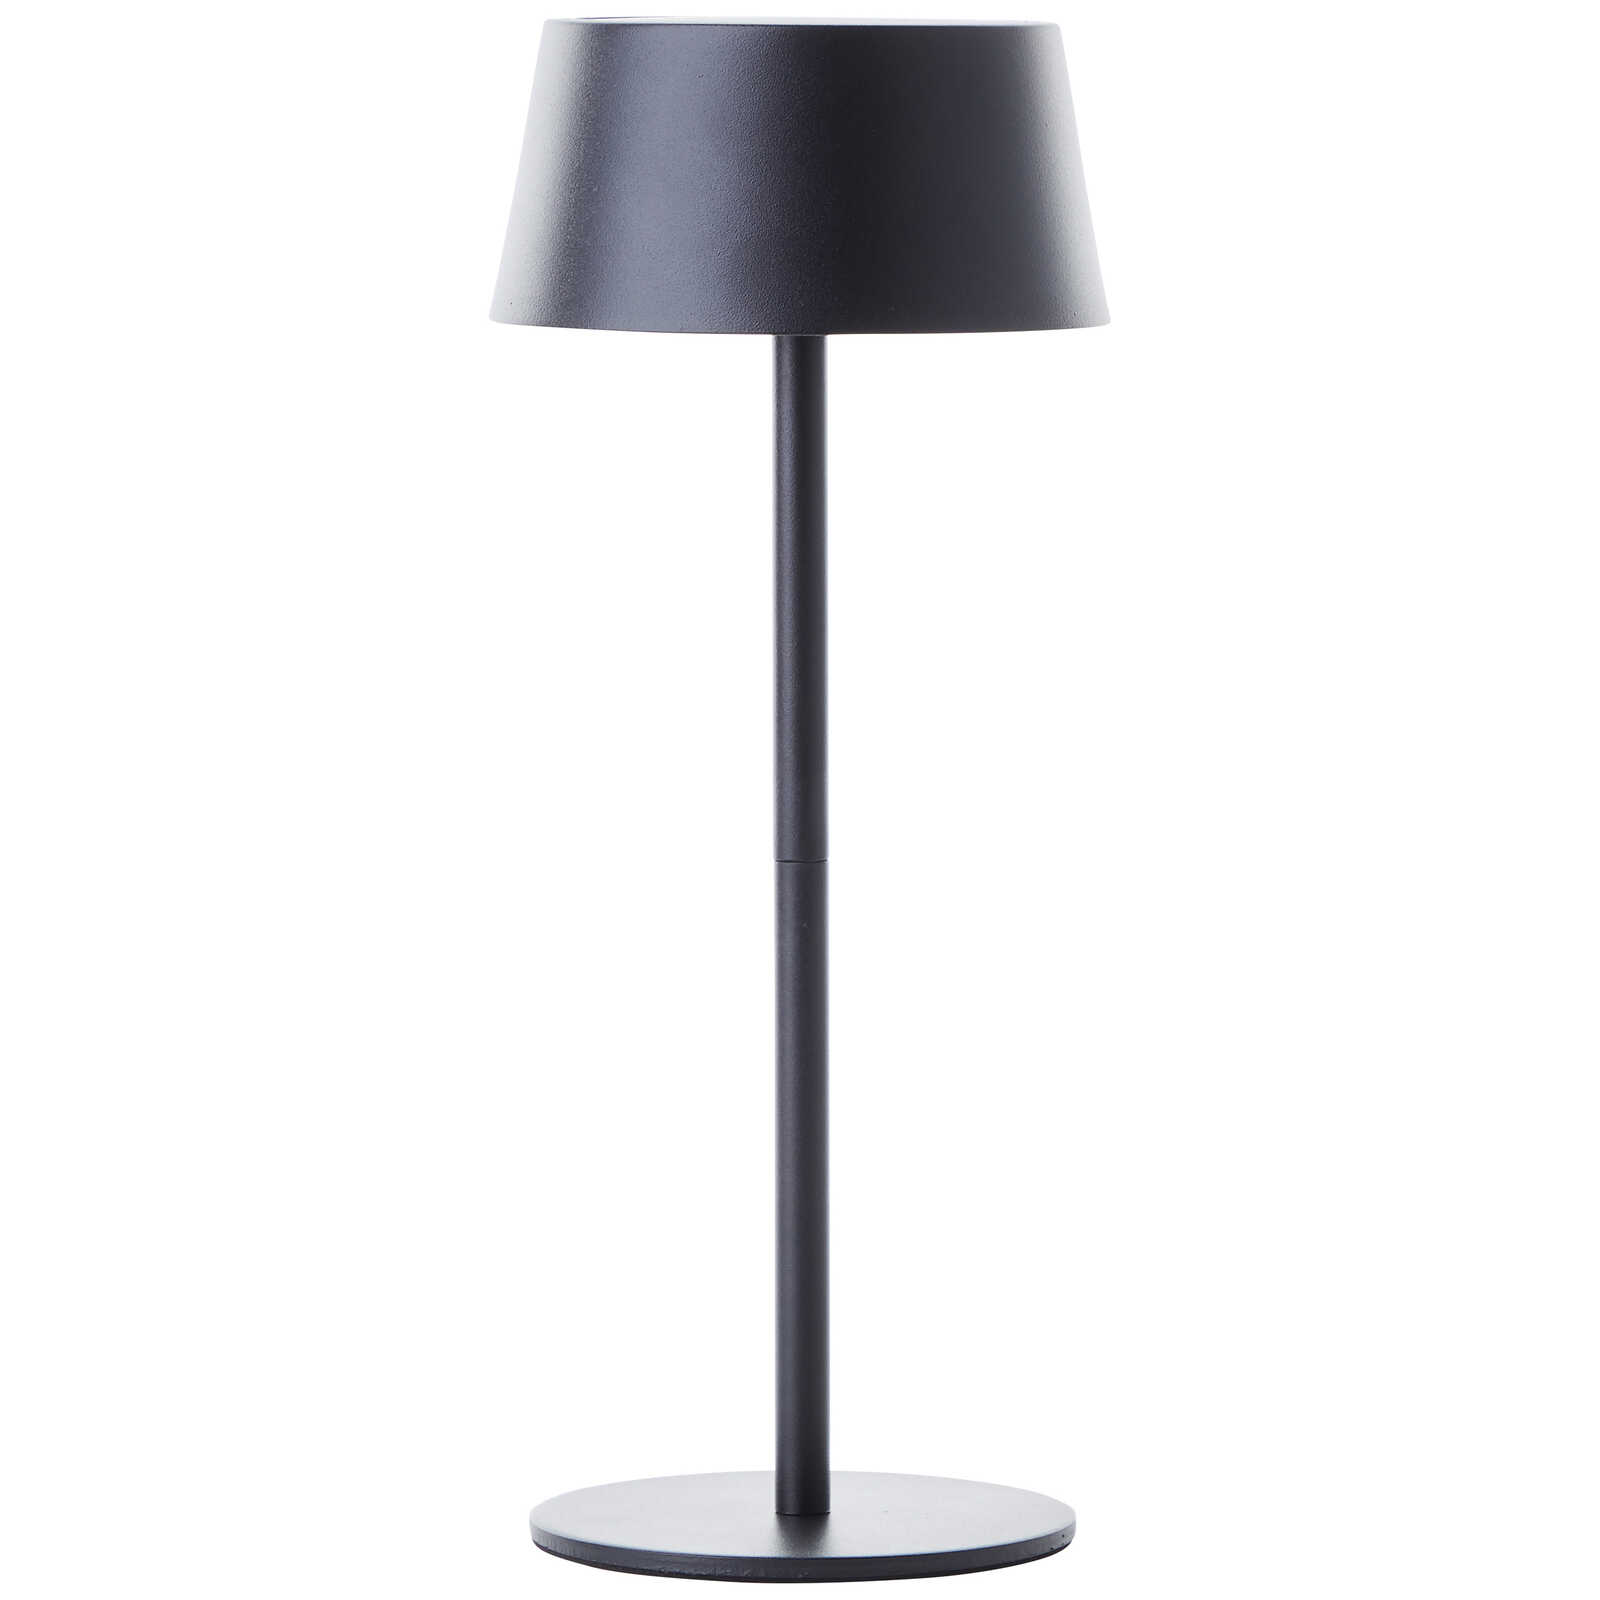             Metalen tafellamp - Outy 3 - Zwart
        